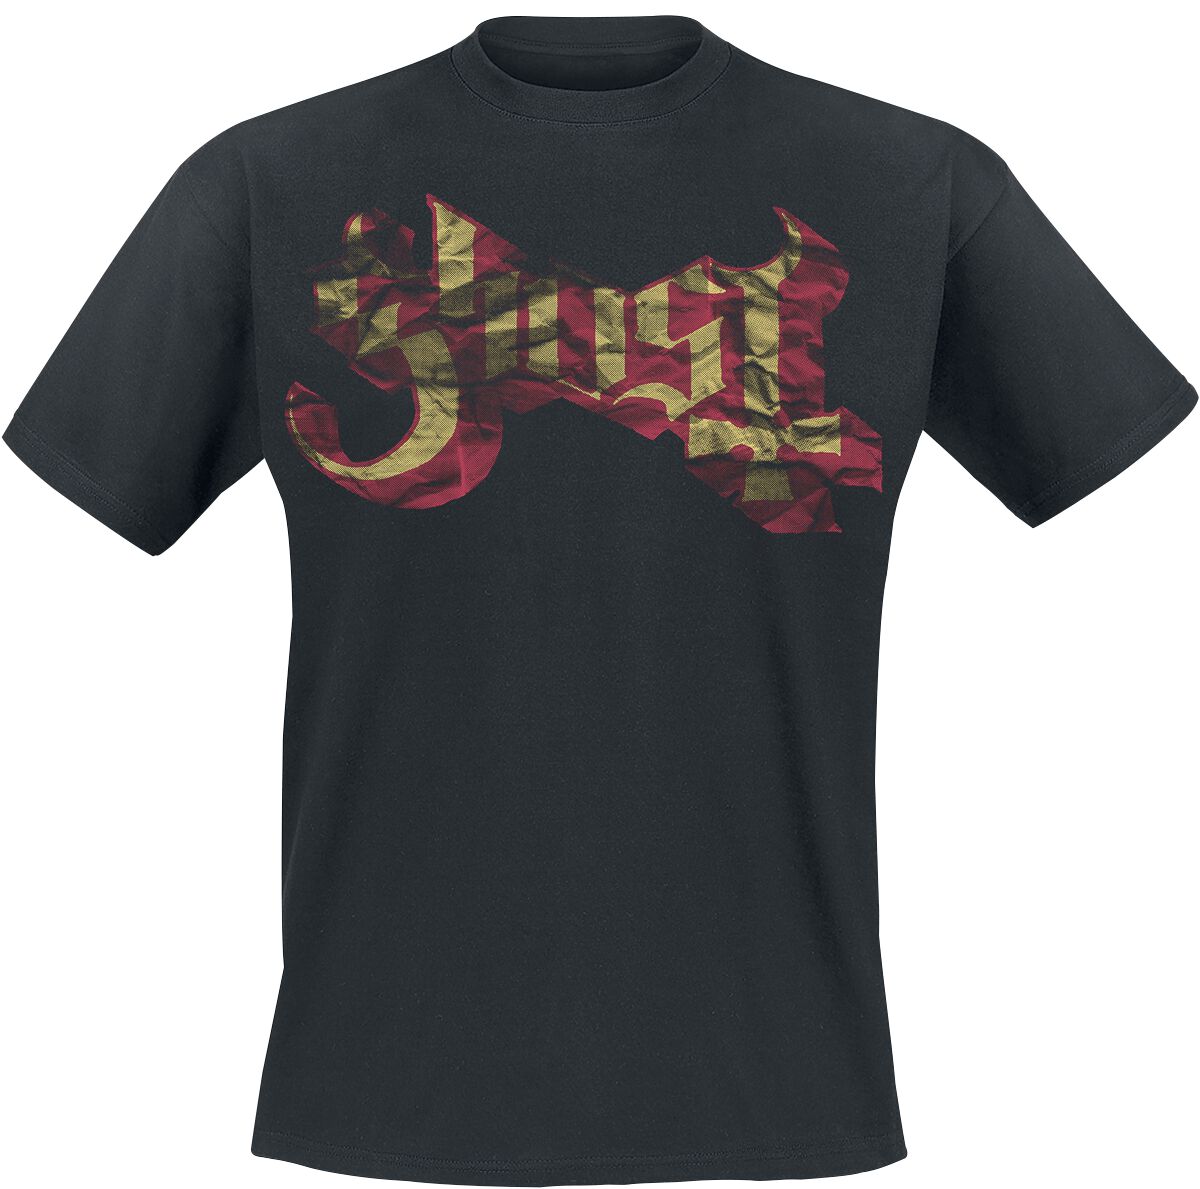 Ghost T-Shirt - Large Logo - S bis XXL - für Männer - Größe XL - schwarz  - Lizenziertes Merchandise!